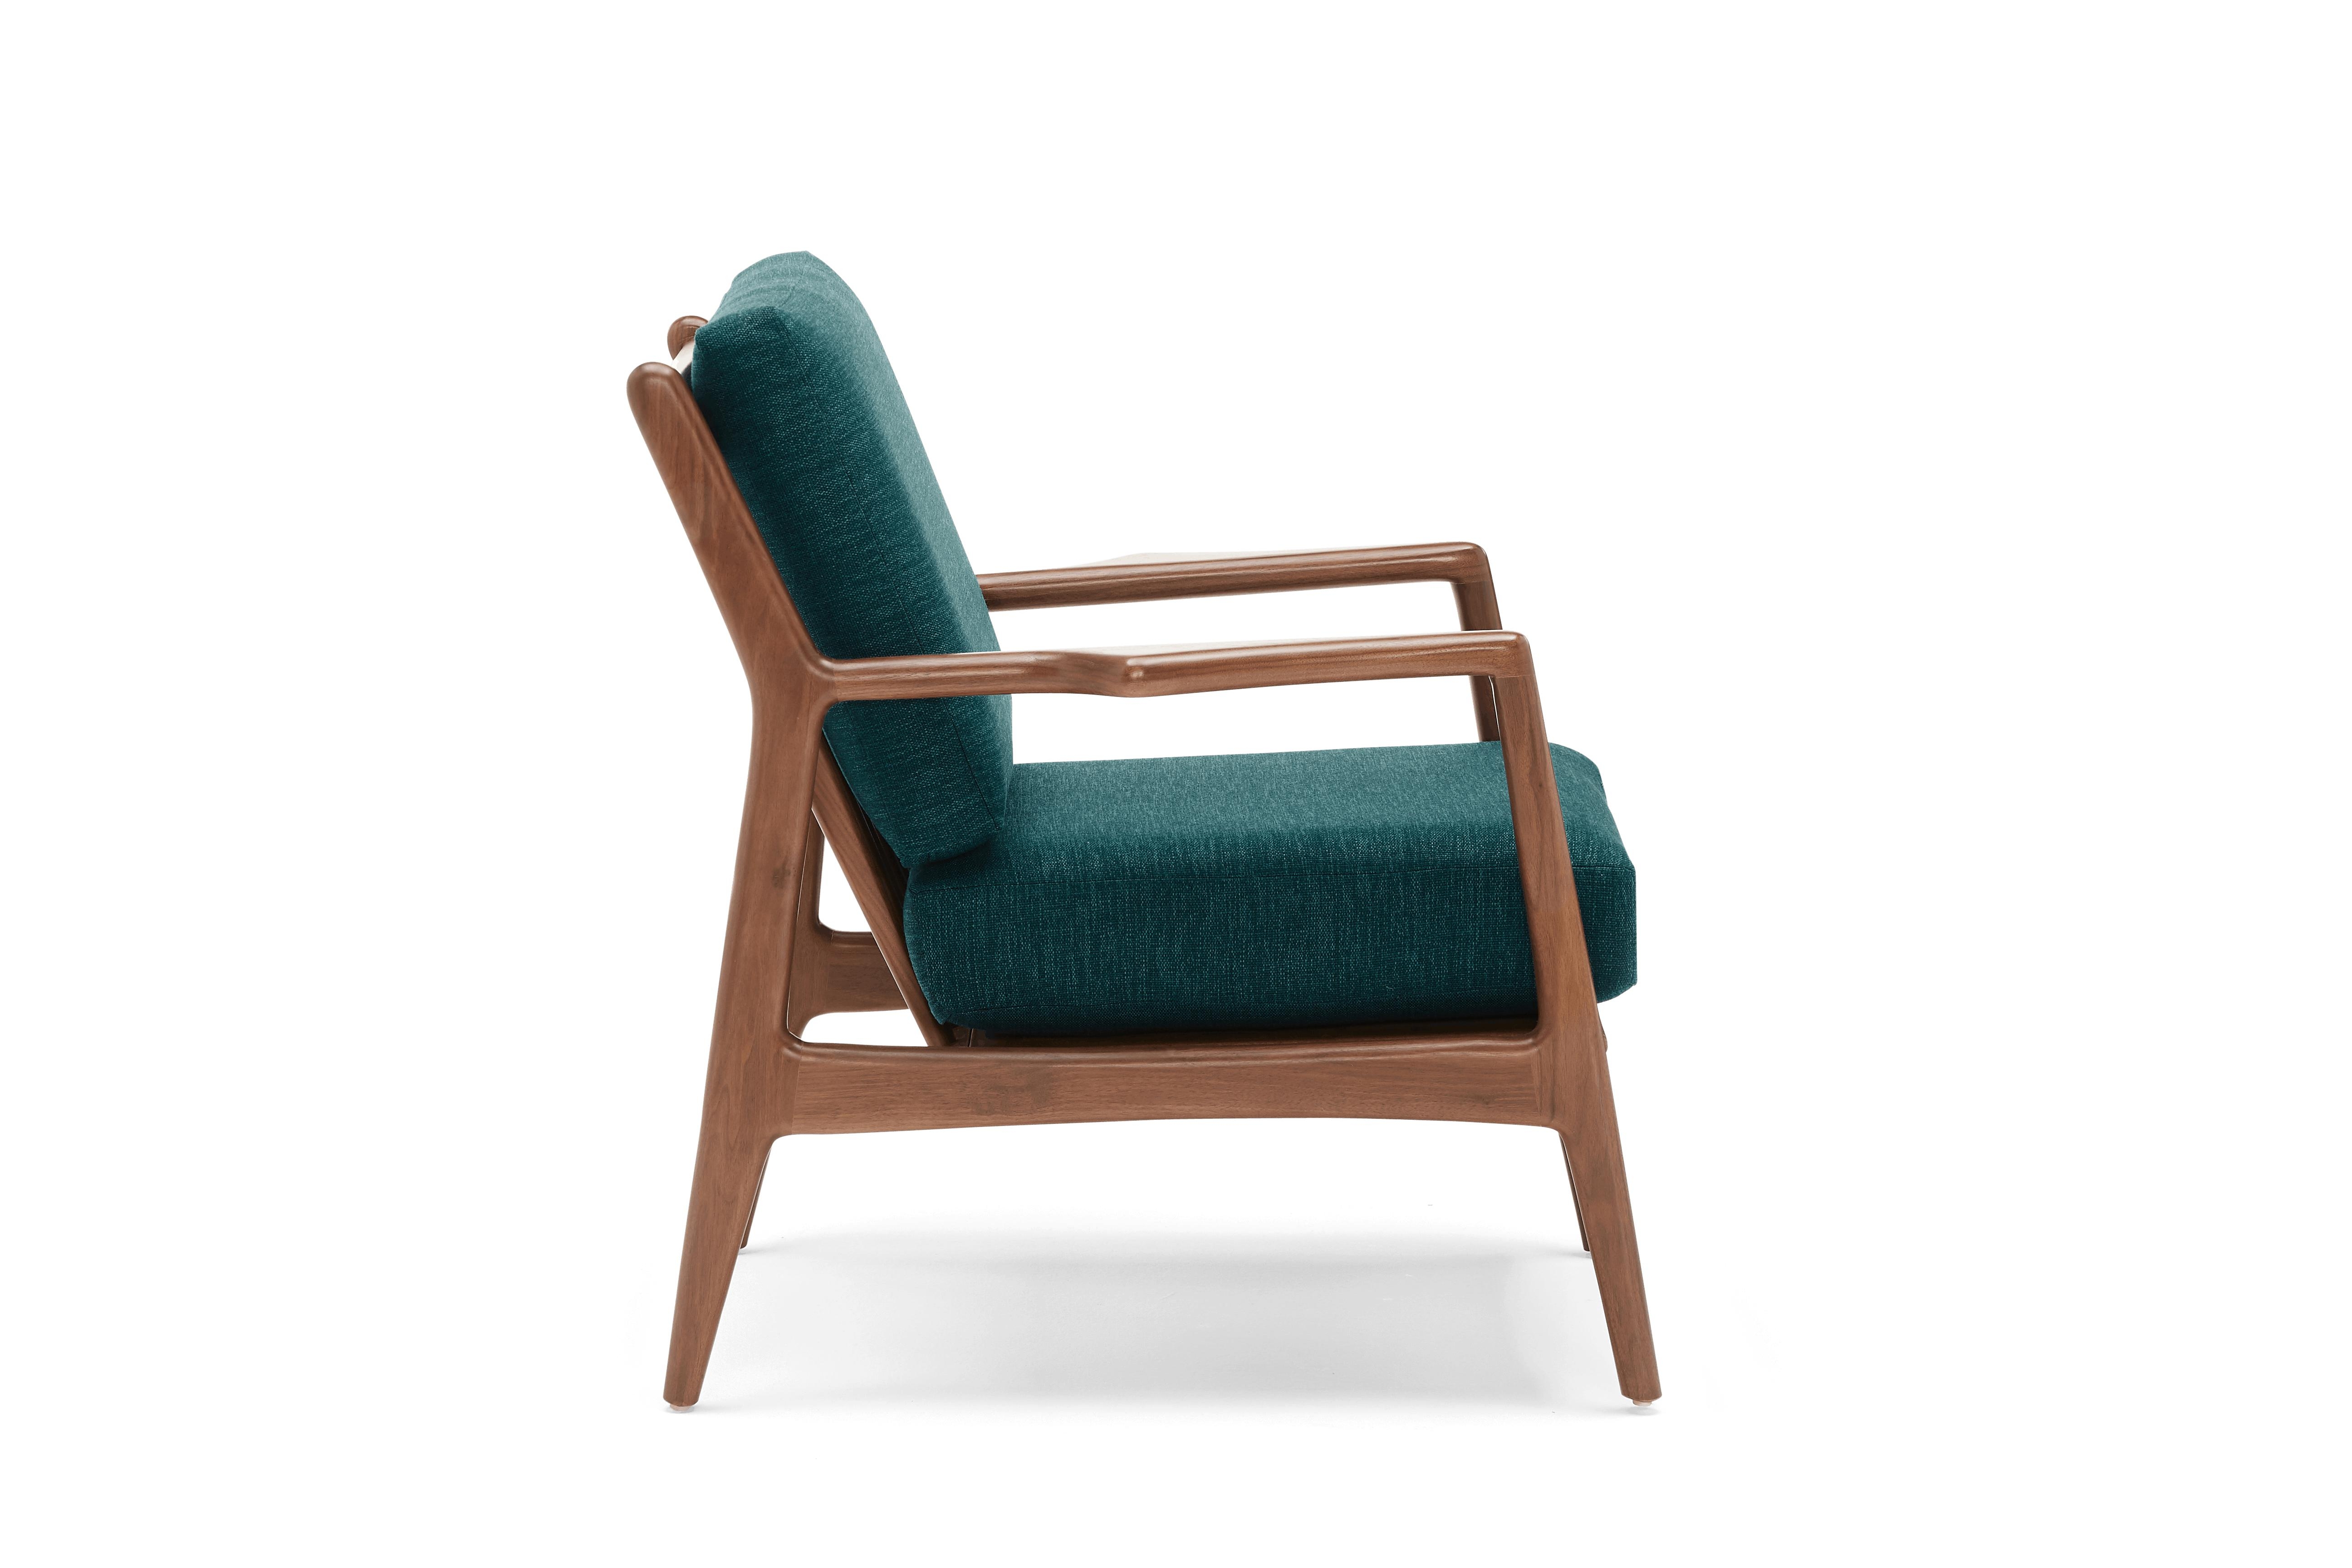 Blue Collins Mid Century Modern Chair - Key Largo Zenith Teal - Walnut - Image 2